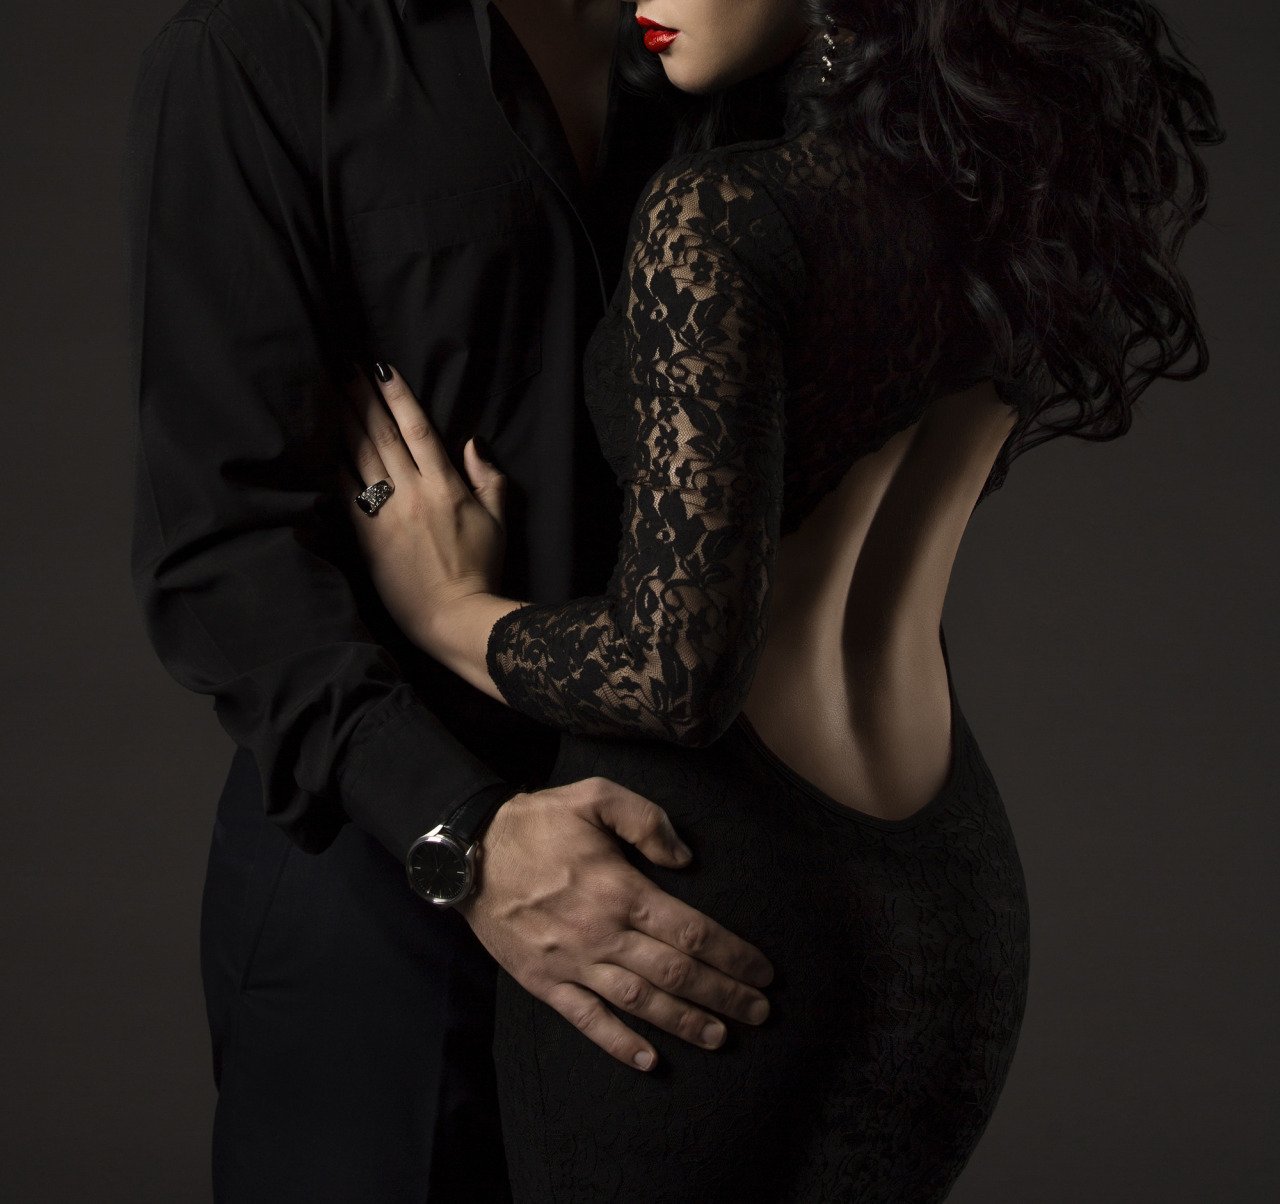 Мужчина и женщина страсть. Девушка в Вечернем платье с мужчиной. Фотосессия в черном платье. Элегантные мужчина и женщина.